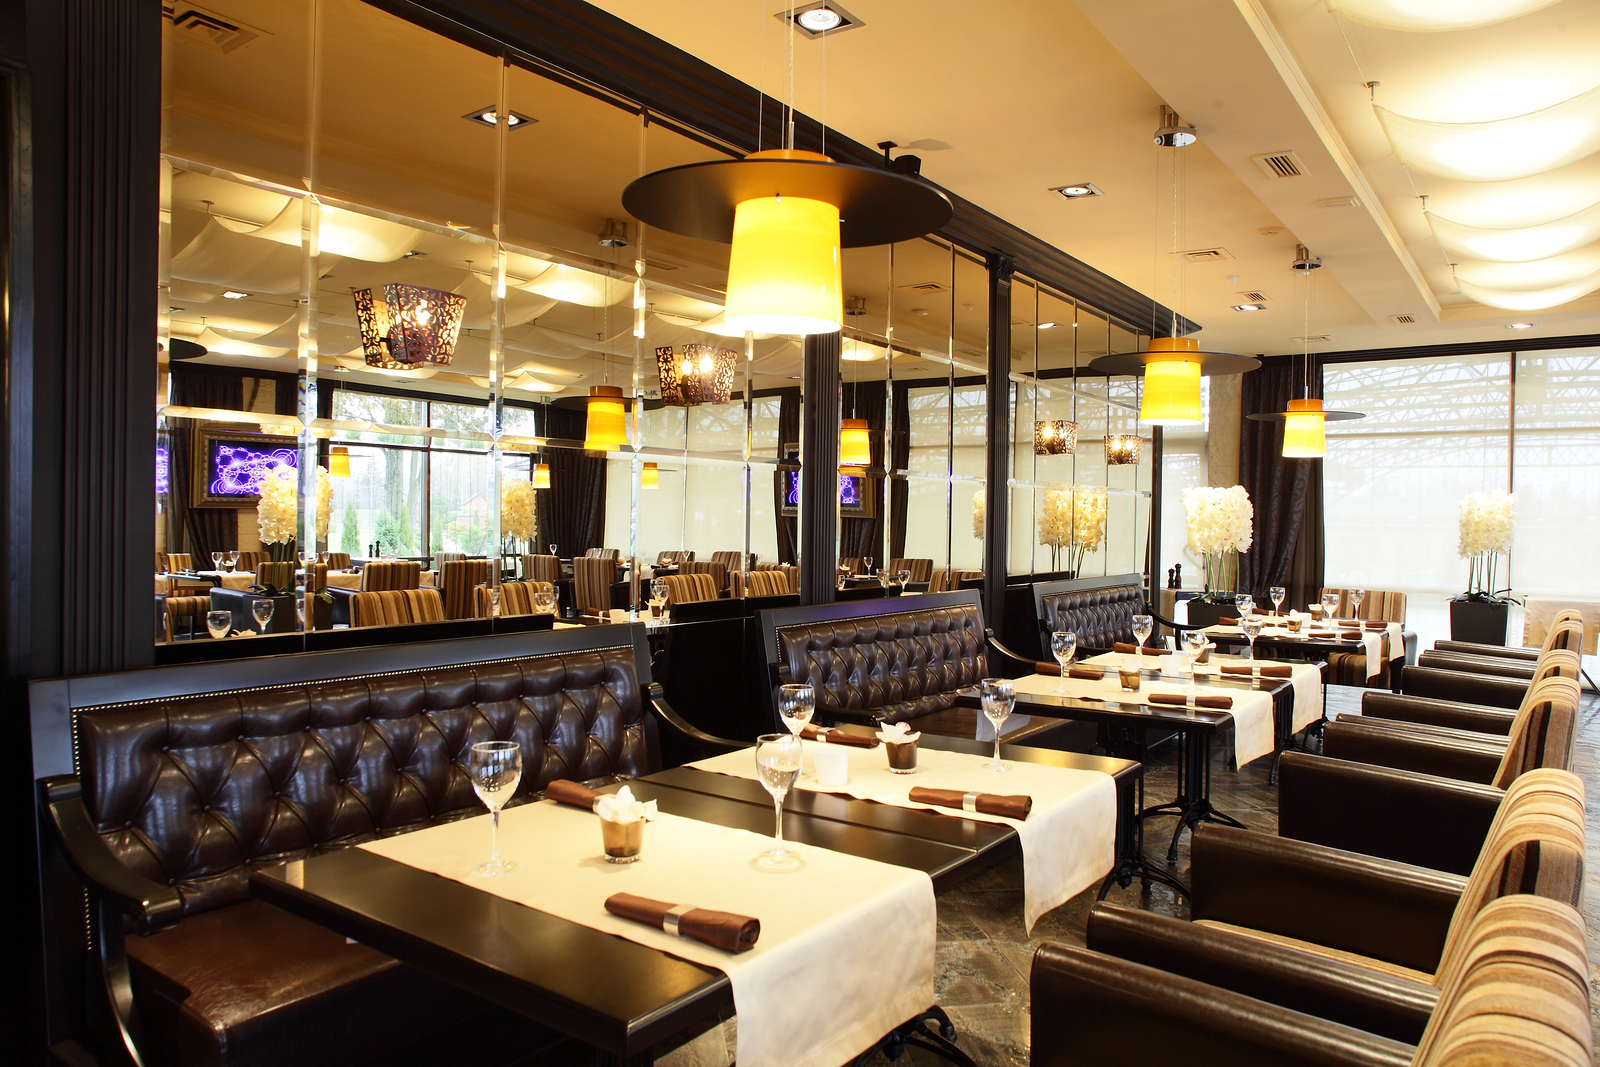 Luxury Restaurant Interior Design